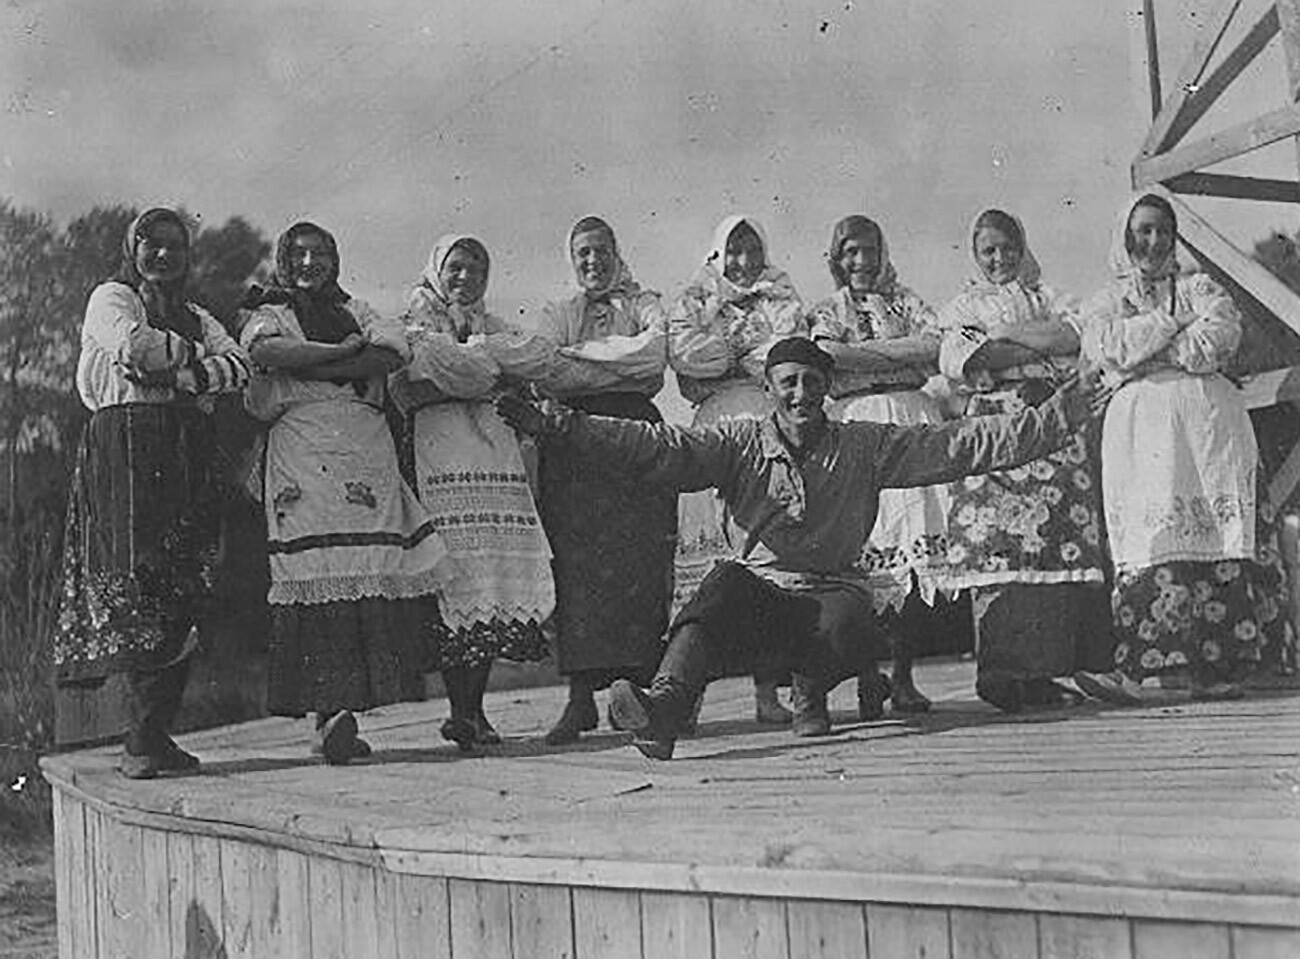 Danza folclórica en la década de 1930

